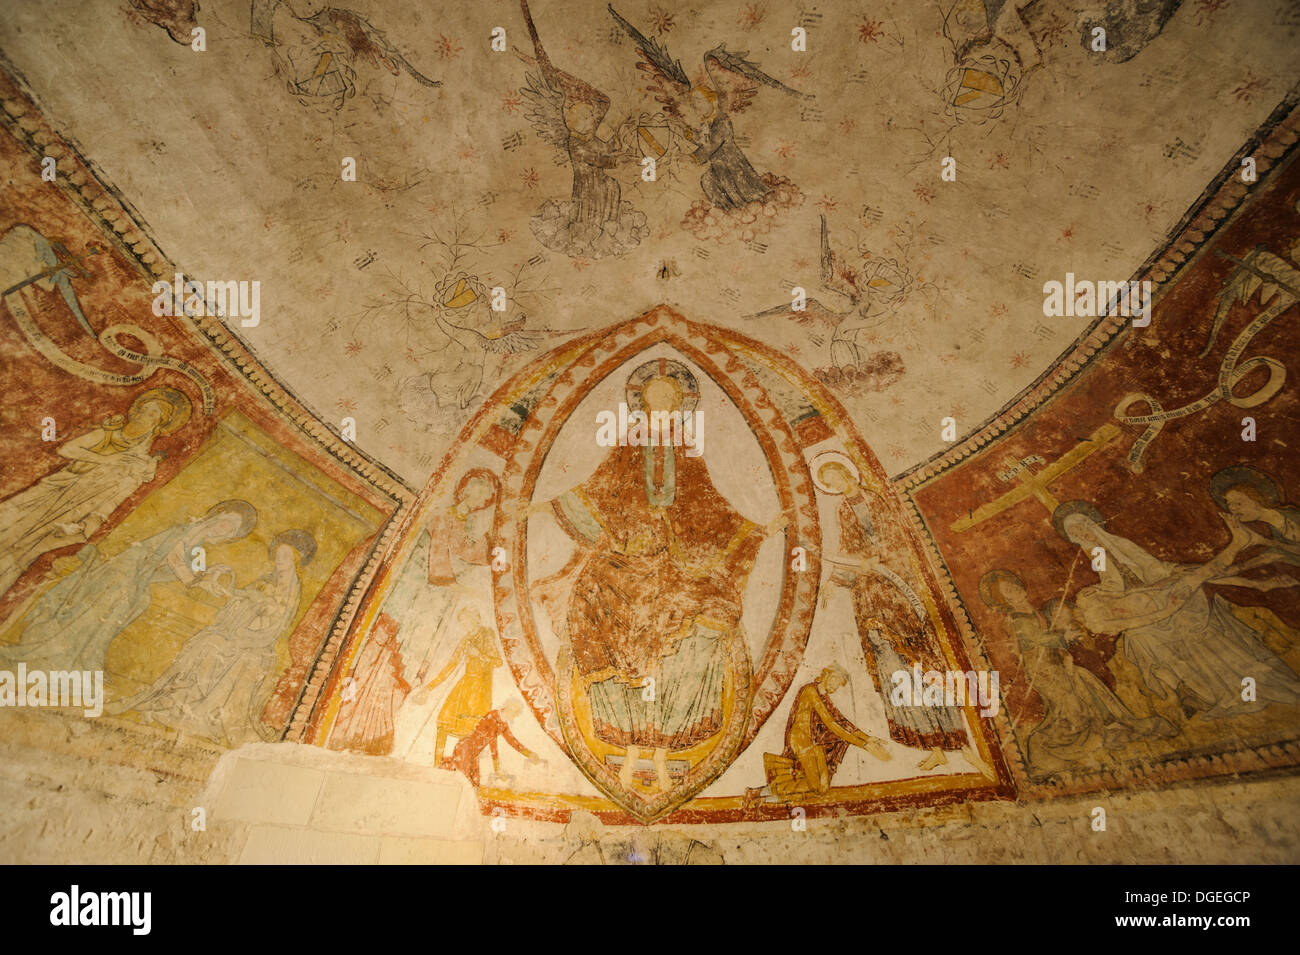 Fresque représentant la vie du Christ, crypte de la Collégiale Saint Aignan, Saint Aignan sur Cher, Loir et Cher, France Banque D'Images